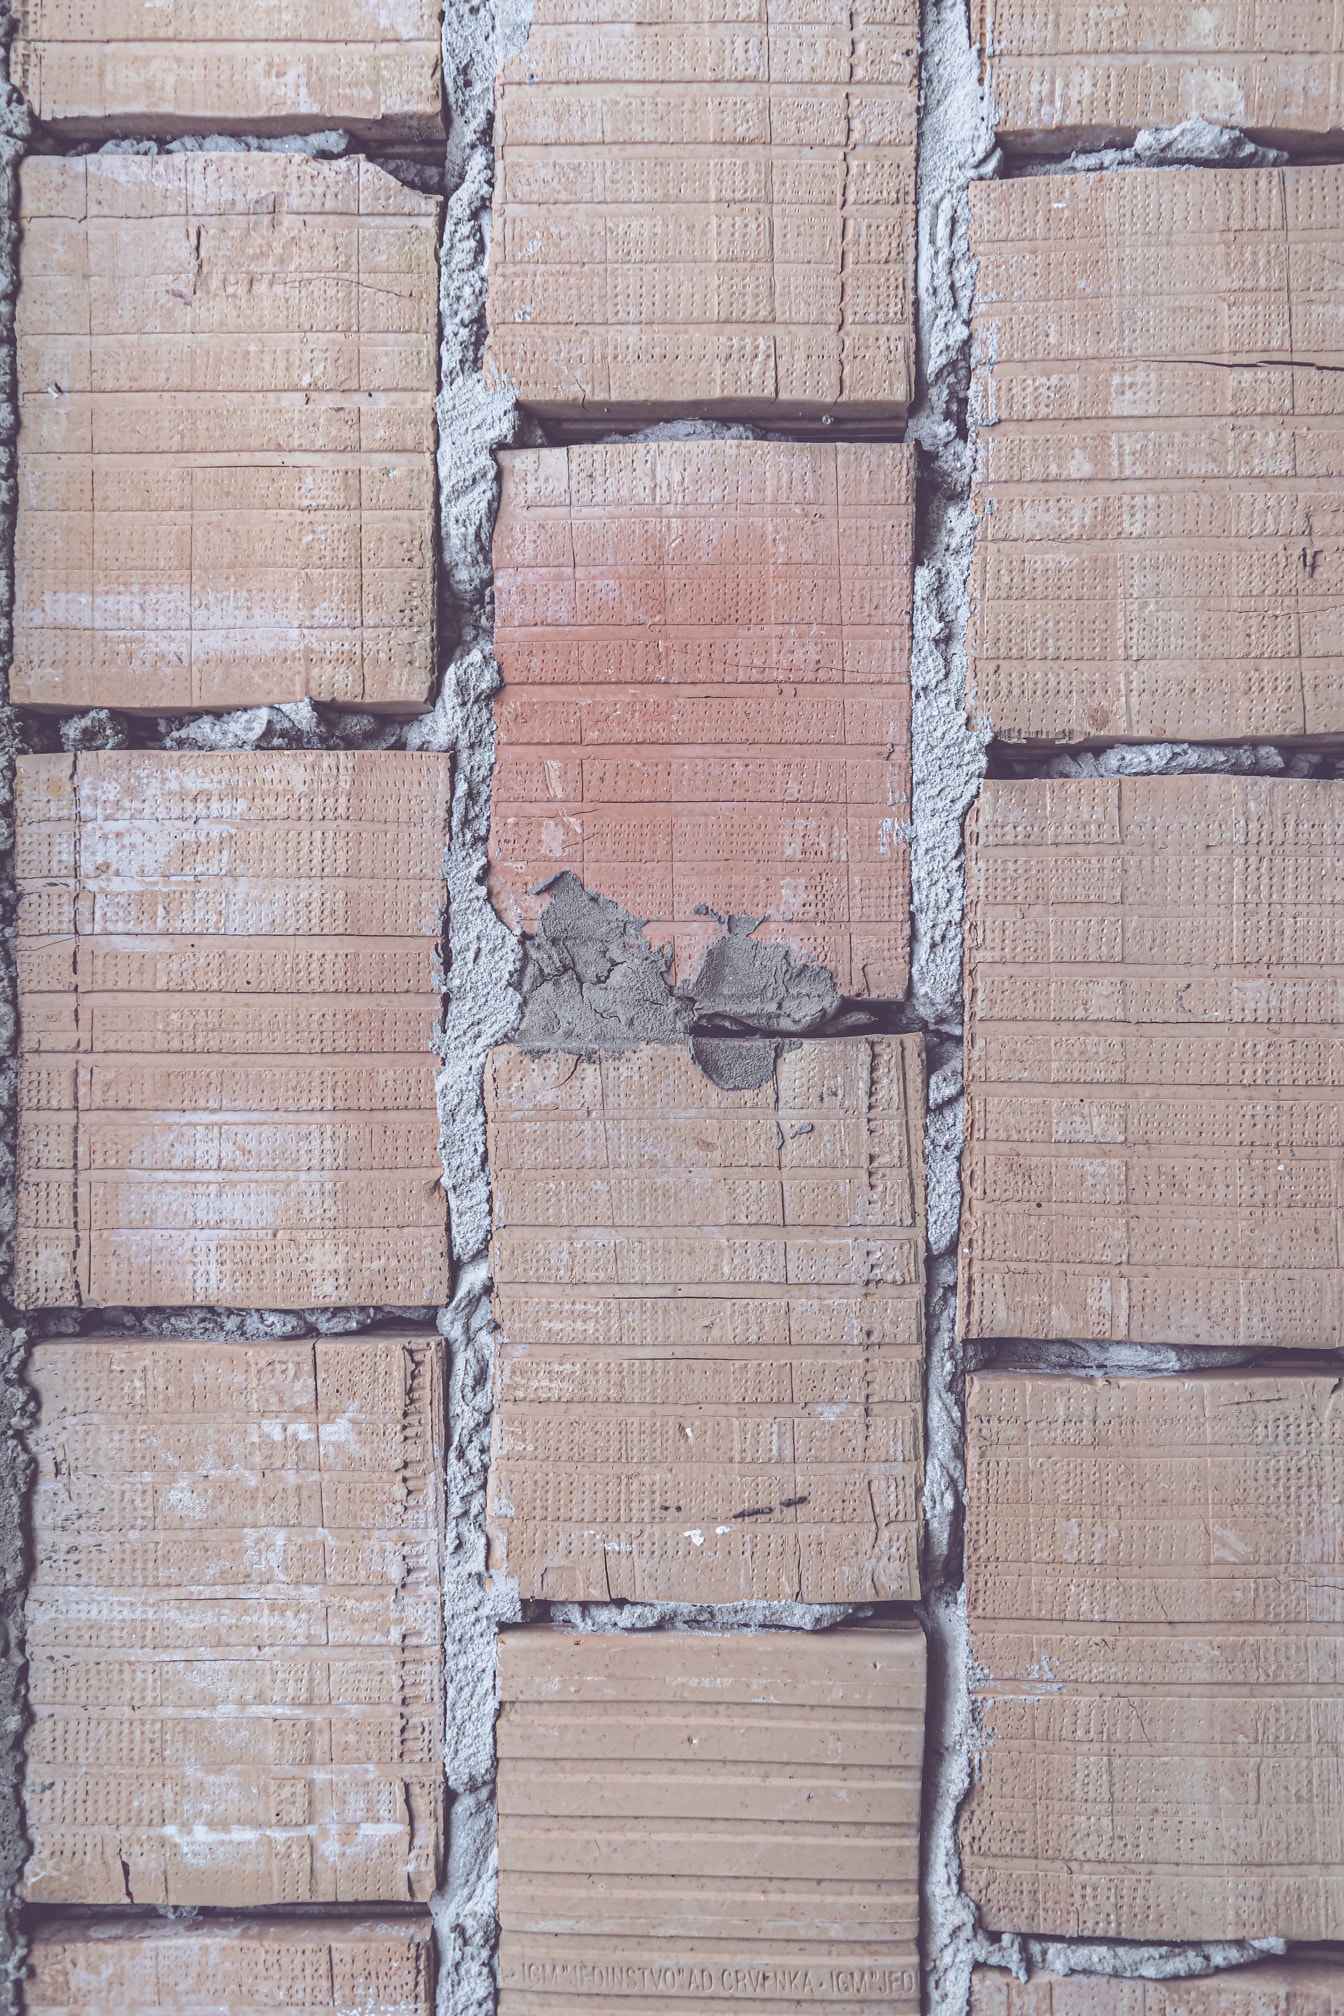 Mampostería vertical de bloques de terracota marrón claro